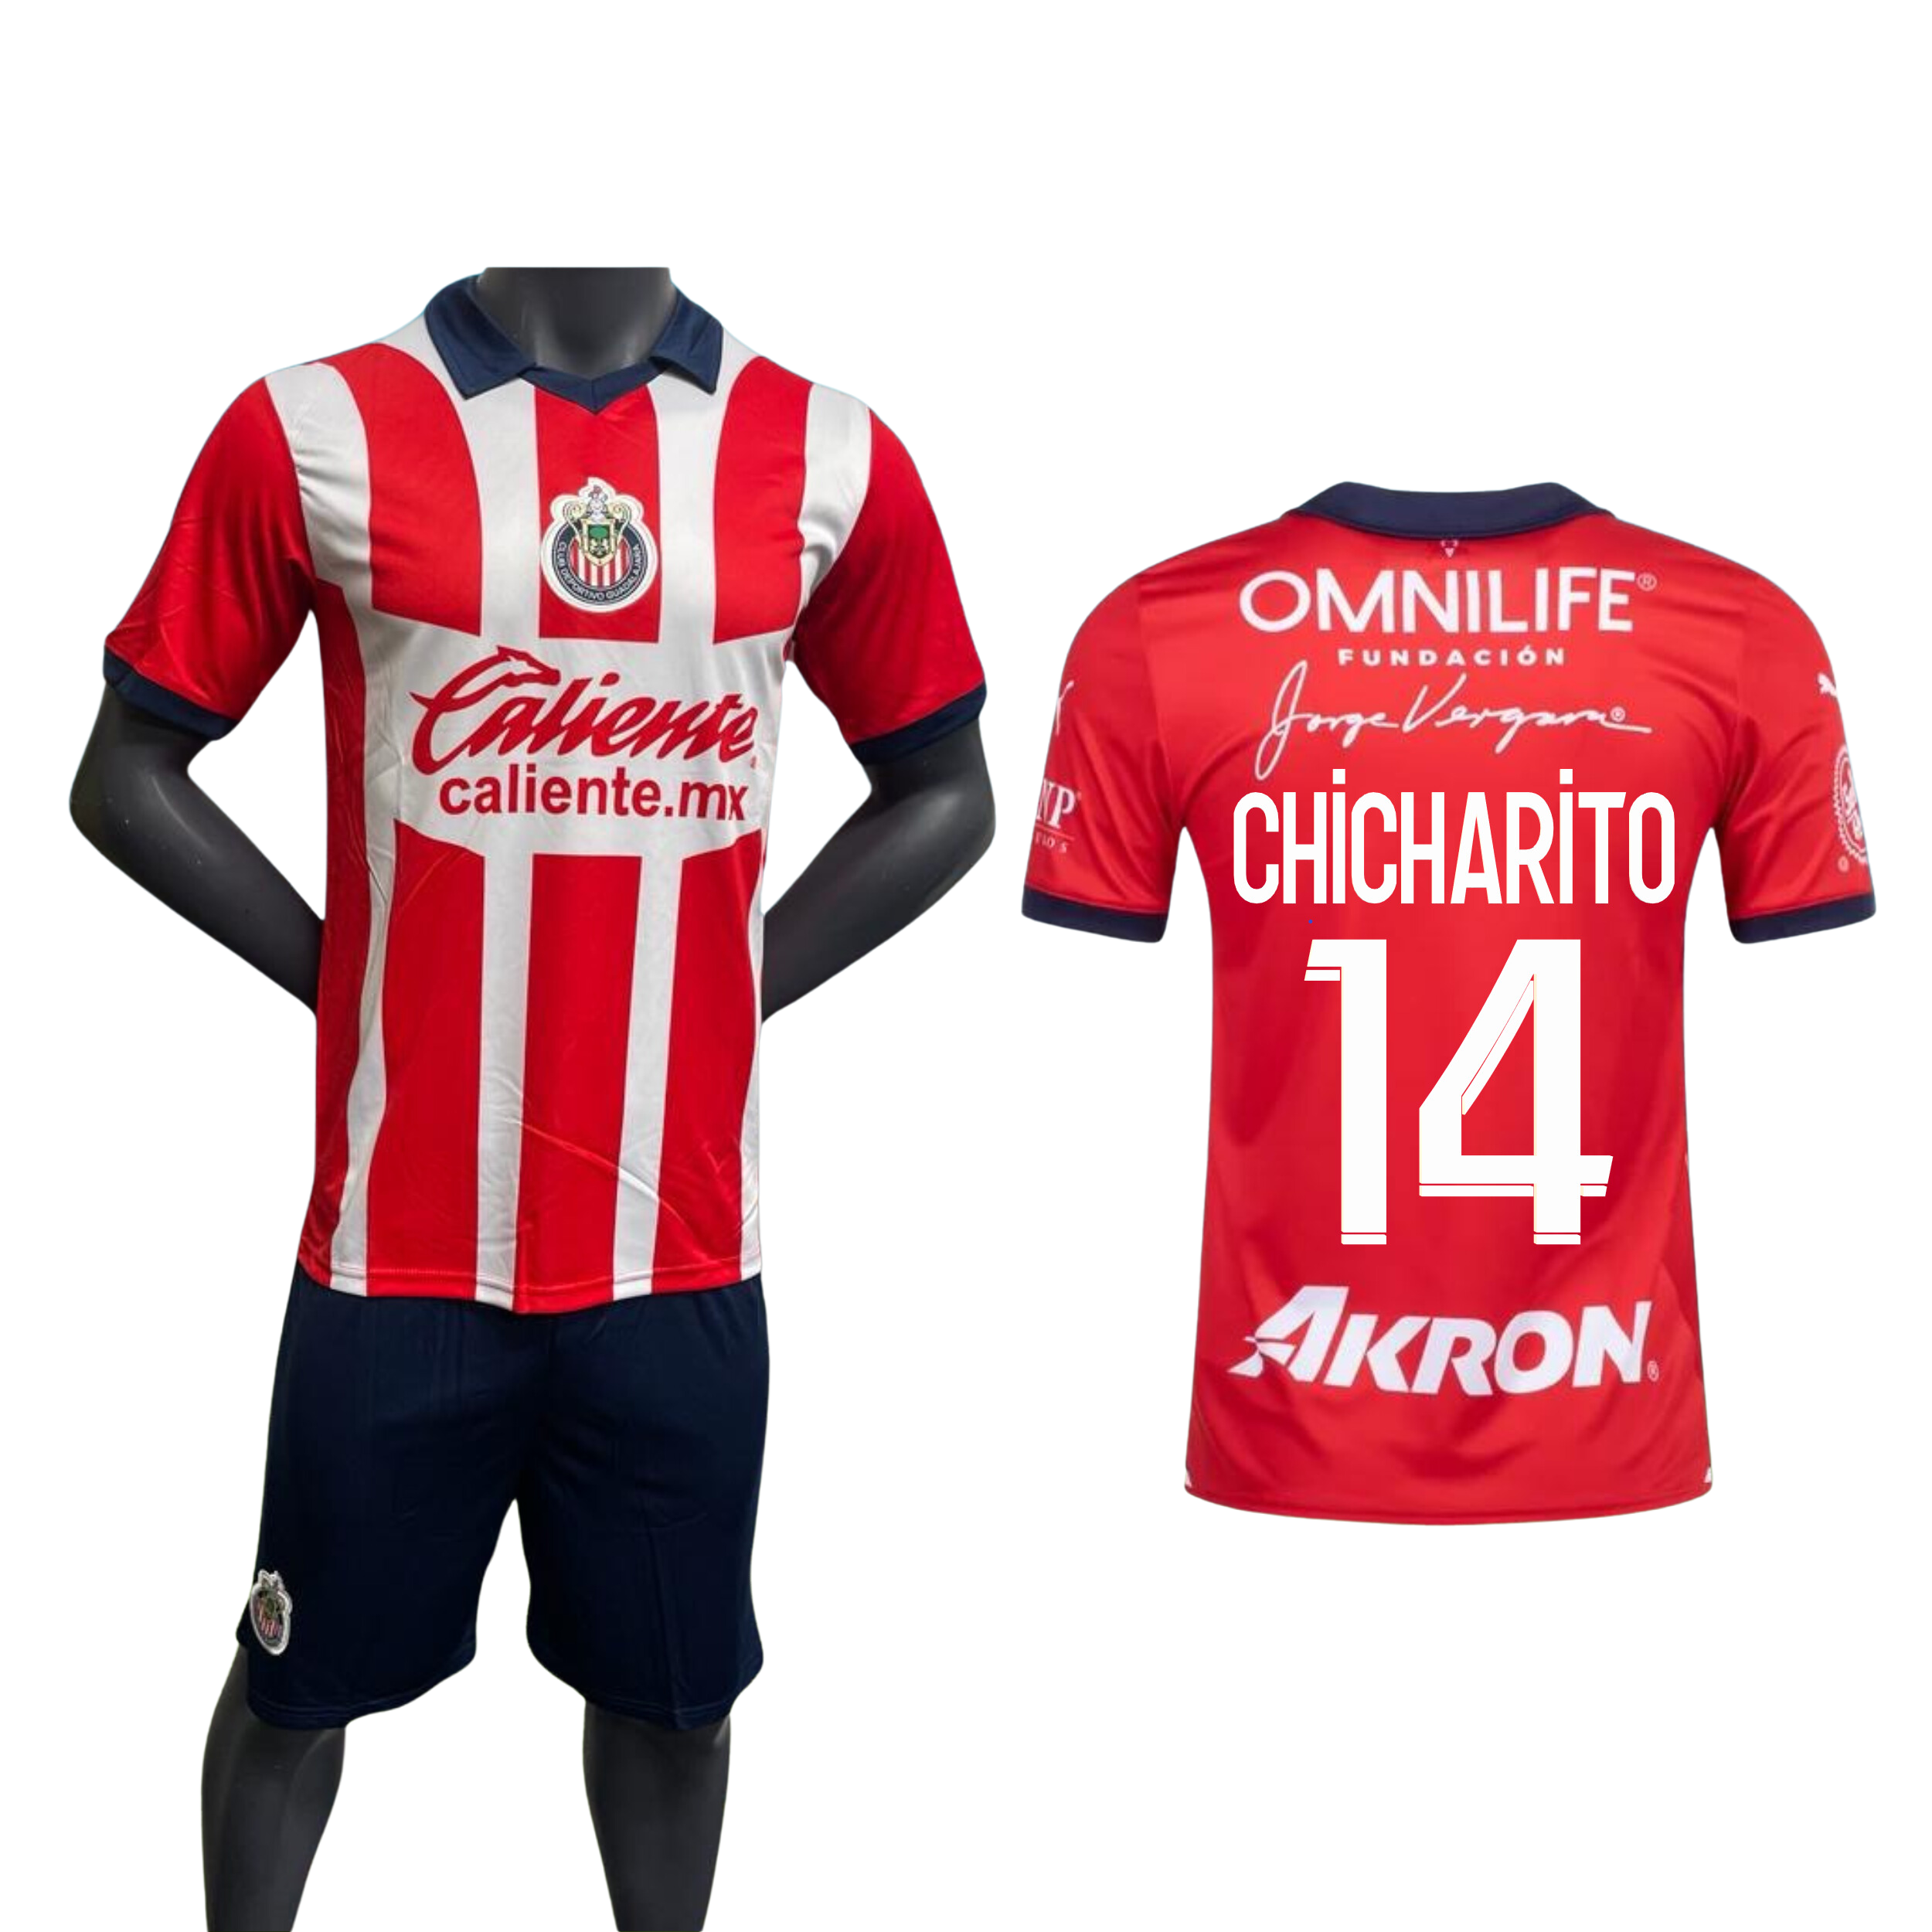 Chicharito Chivas Replica Home Kit - 23/24